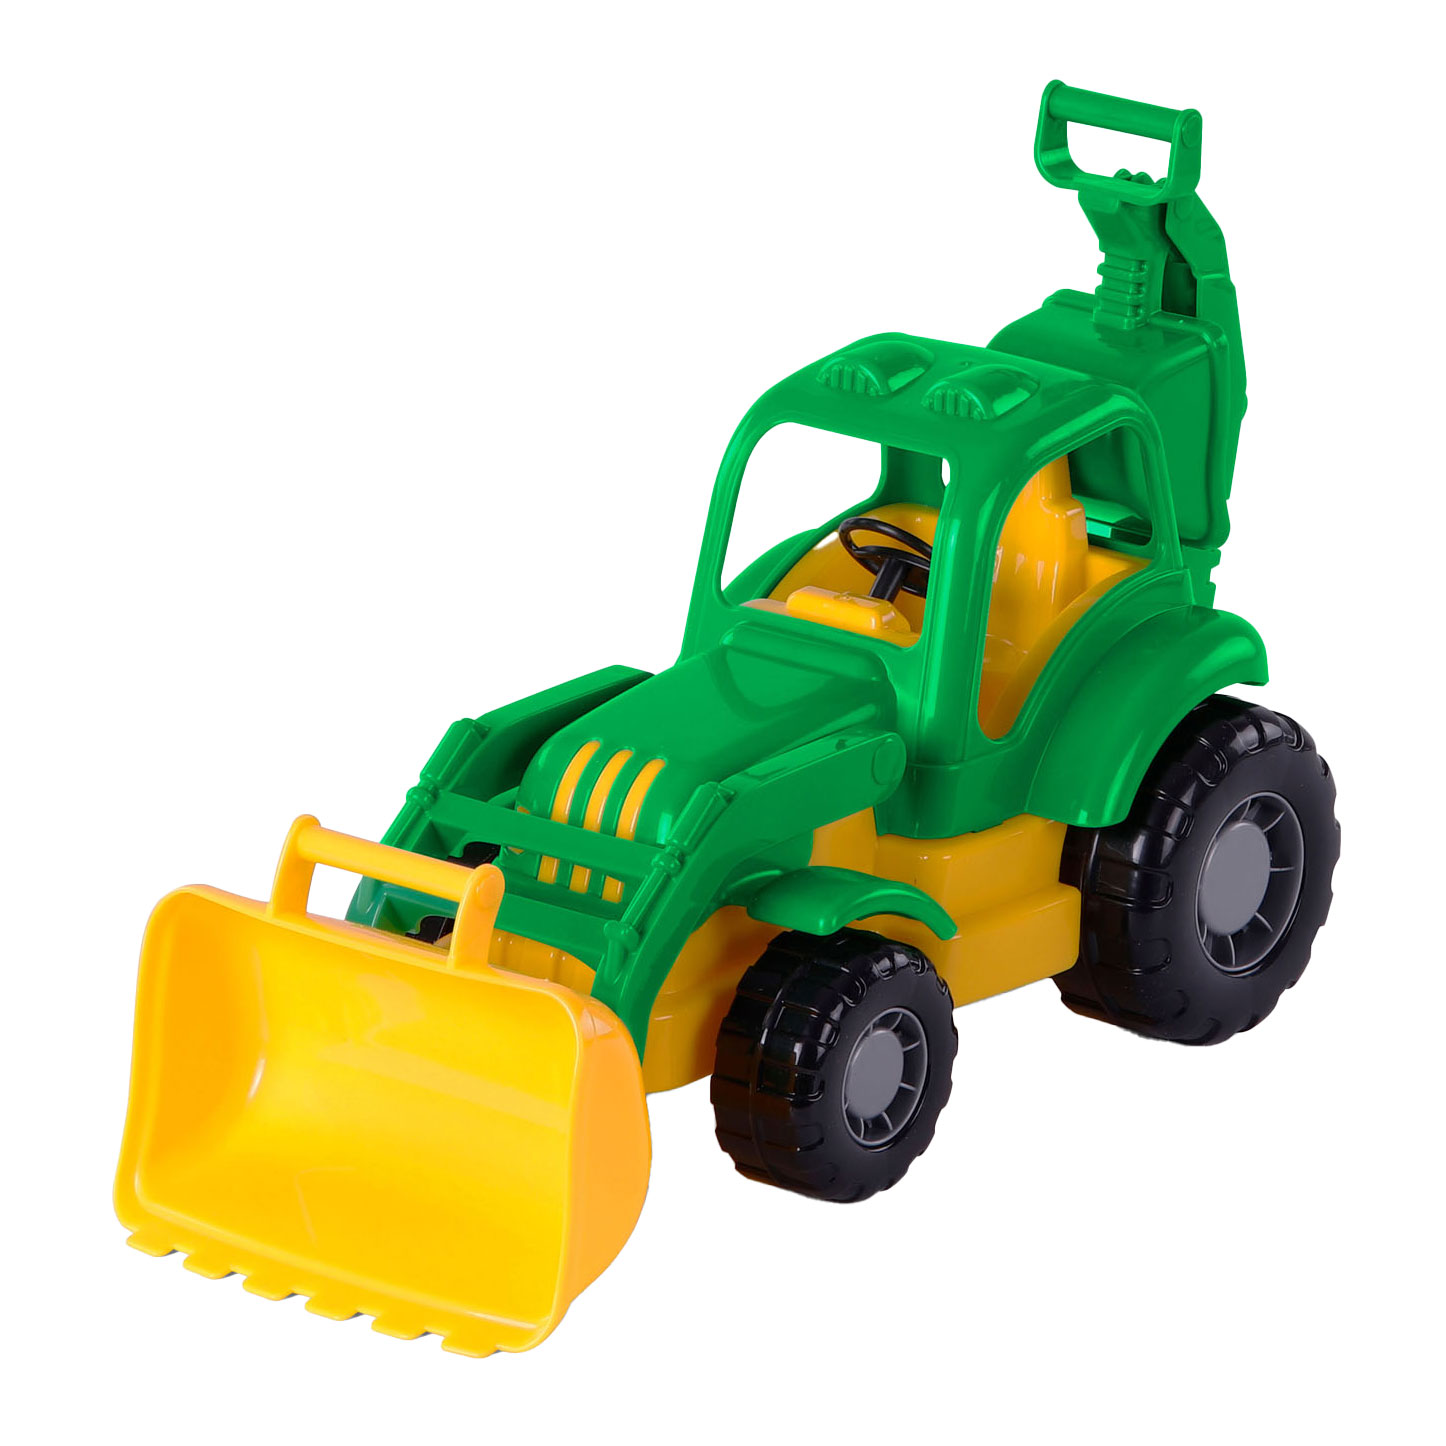 Tracteur excavateur Cavallino Classic, 37 cm